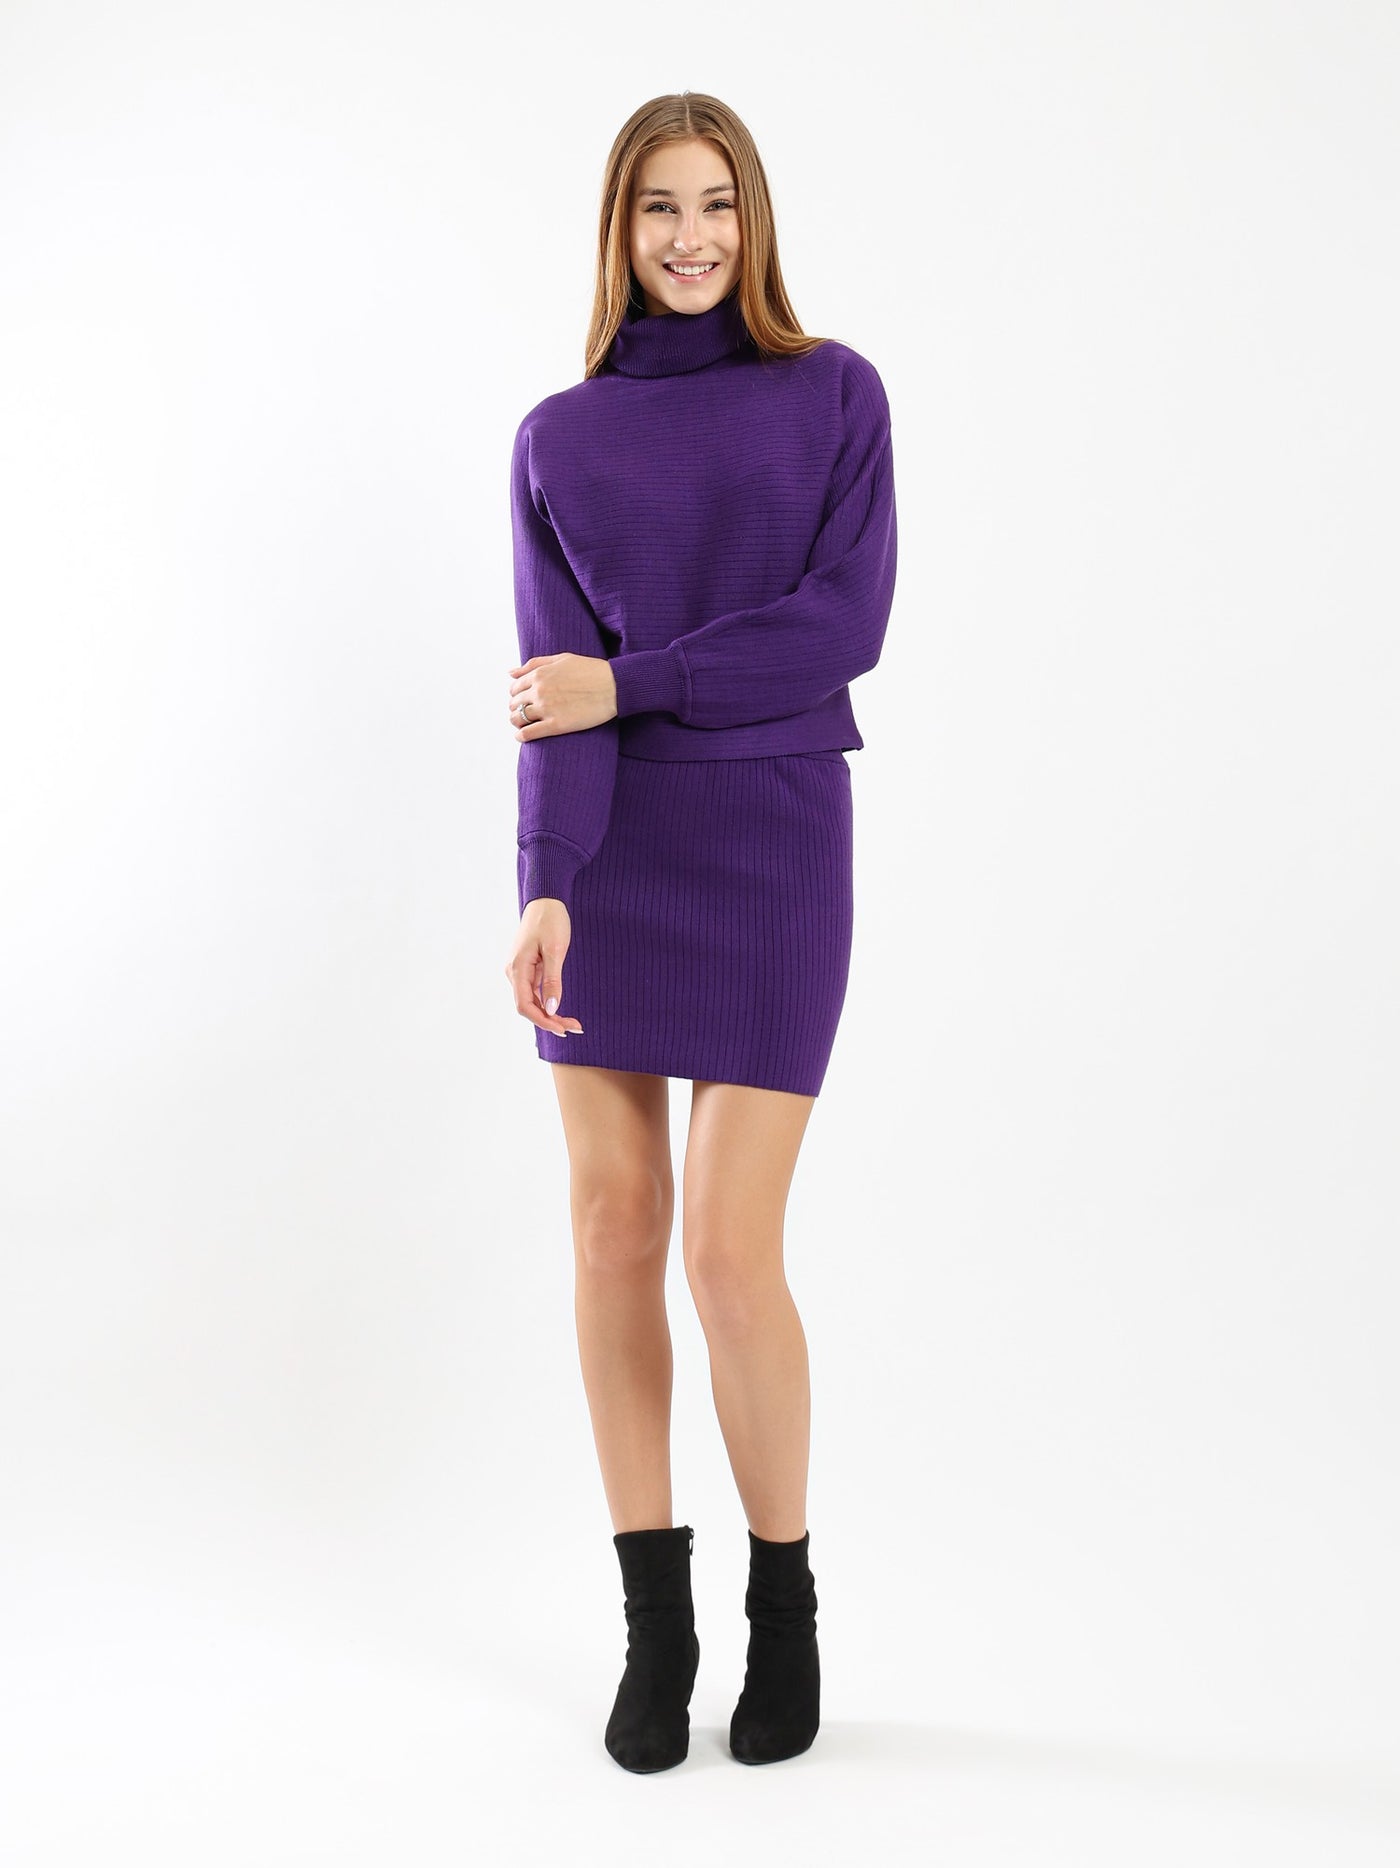 Skirt - Mini Length - Ribbed Design